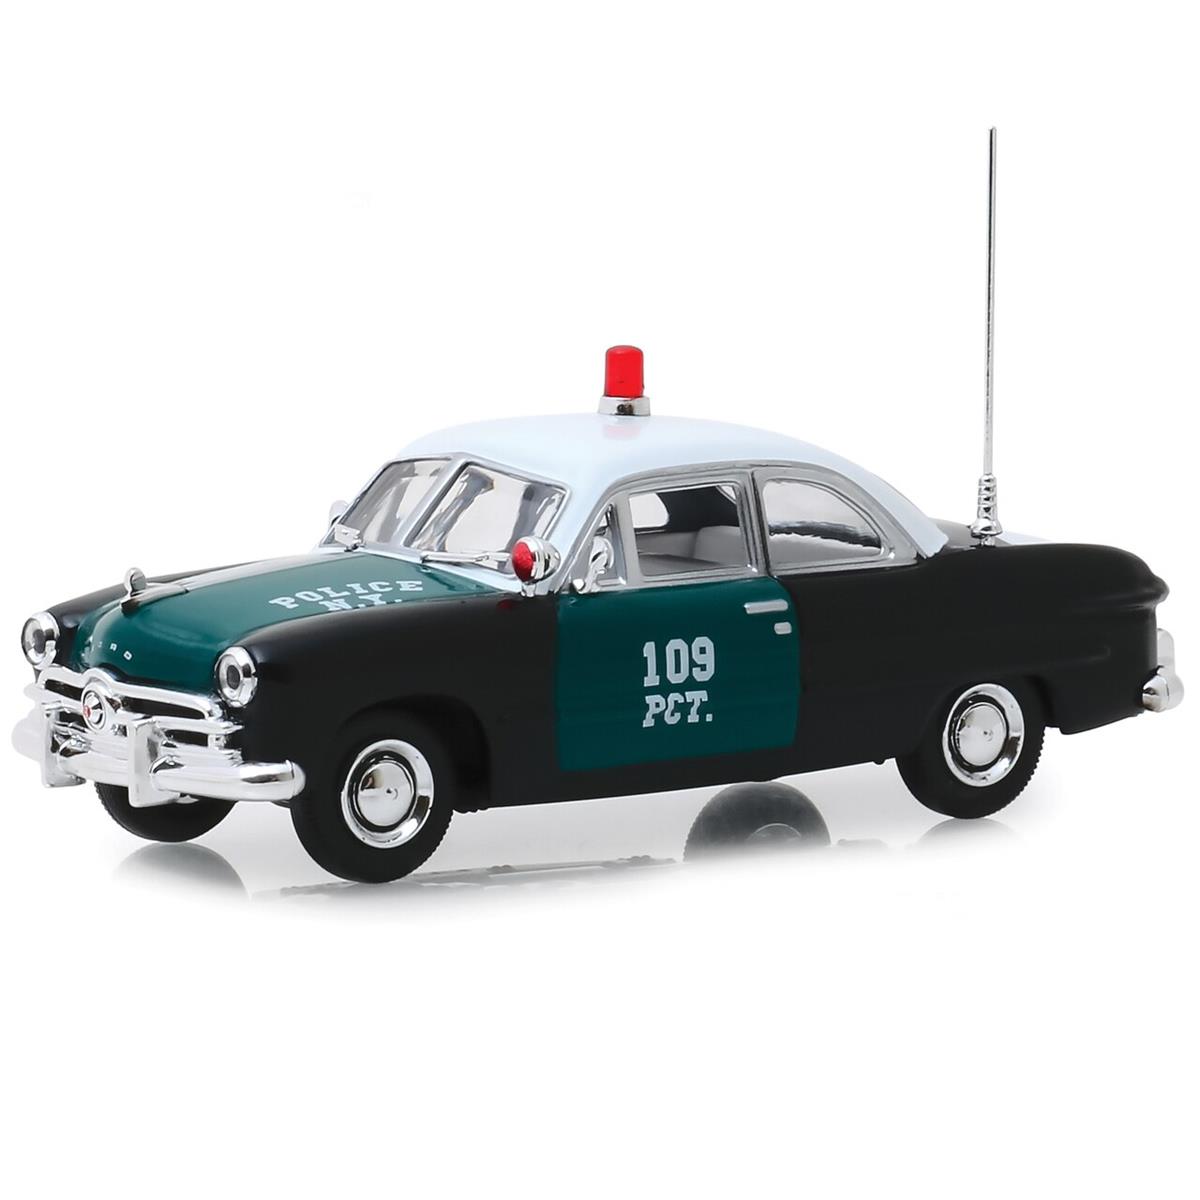 Greenlight 1949 Ford フォード NYPD Police Fire EMS ポリス /ファイア/EMS Cruiser 1/43 スケール パトカー ダイキャストカー ダイキャスト 車のおもちゃ 車 おもちゃ コレクション ミニチュア ダイカスト モデルカー ミニカー アメ車 ギフト プレゼント